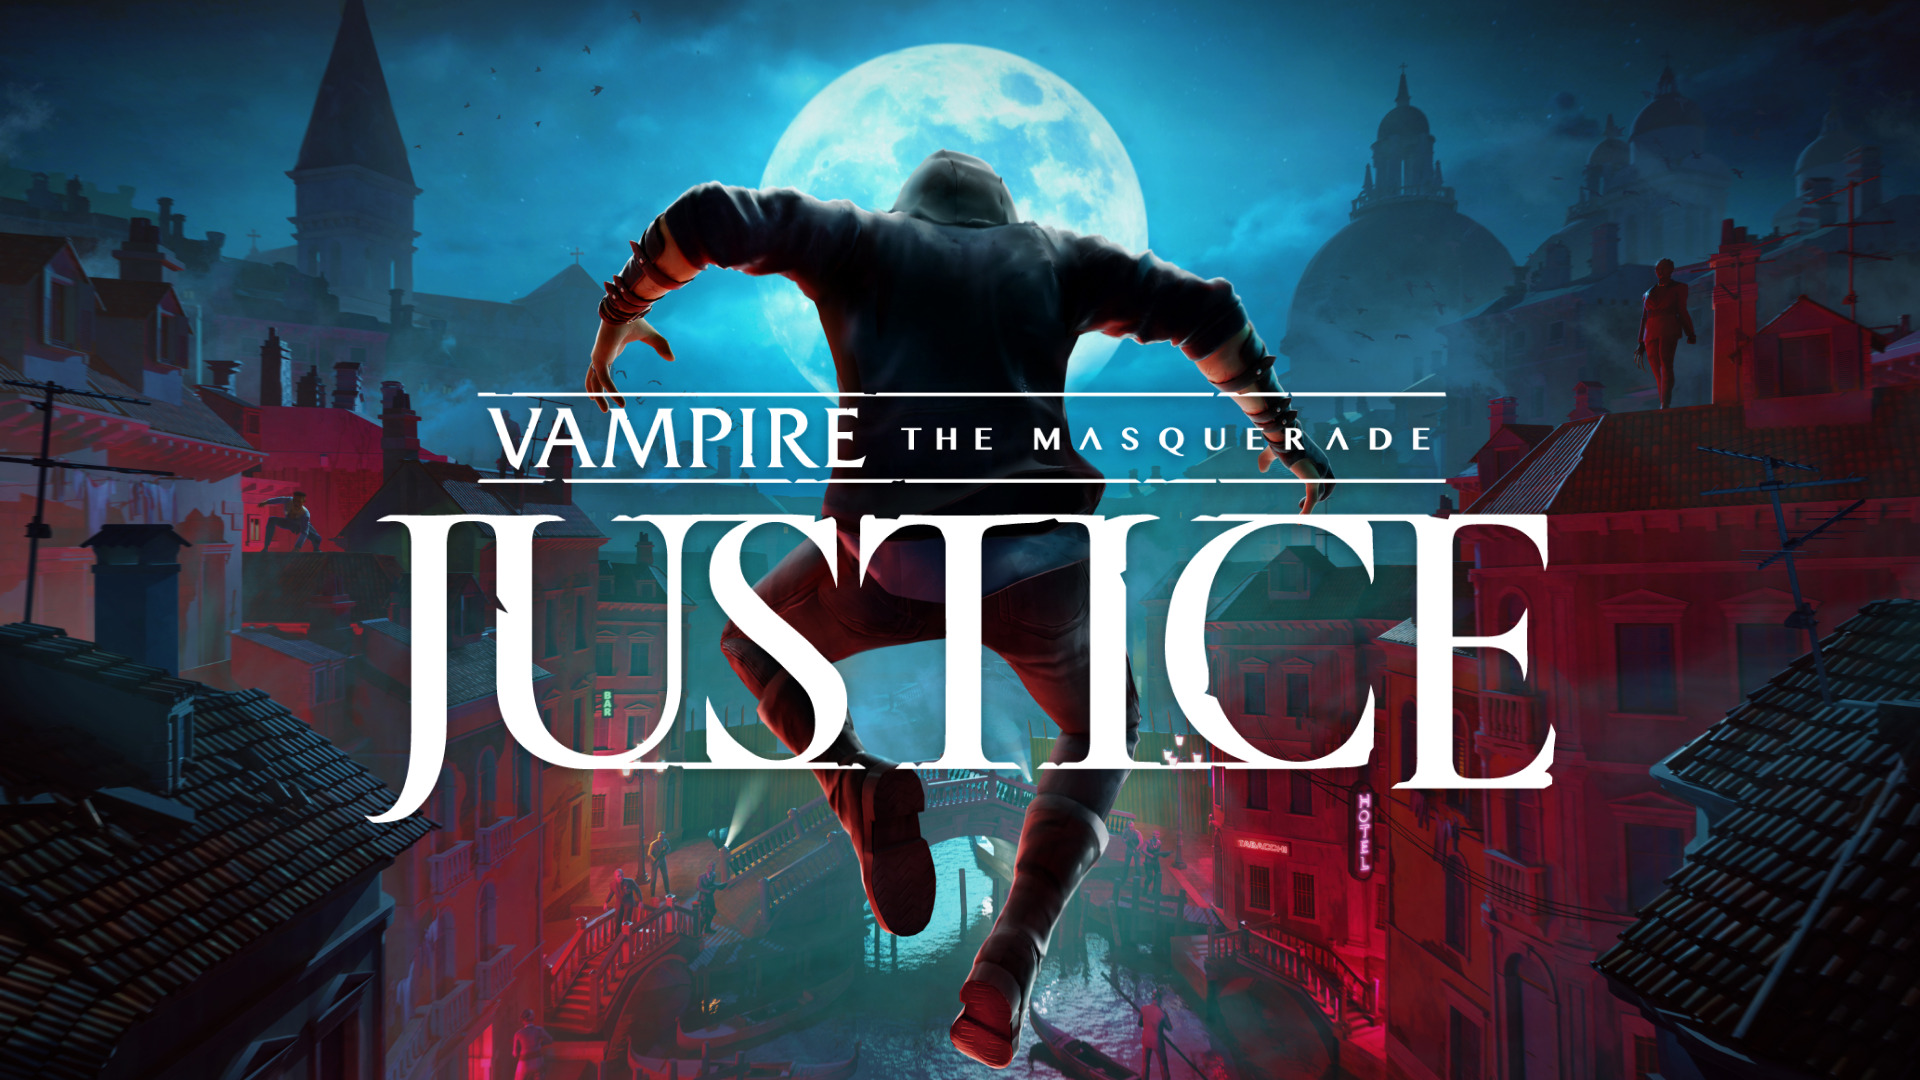 Vampire: The Masquerade - Swansong gameplay reveal trailer - Gematsu